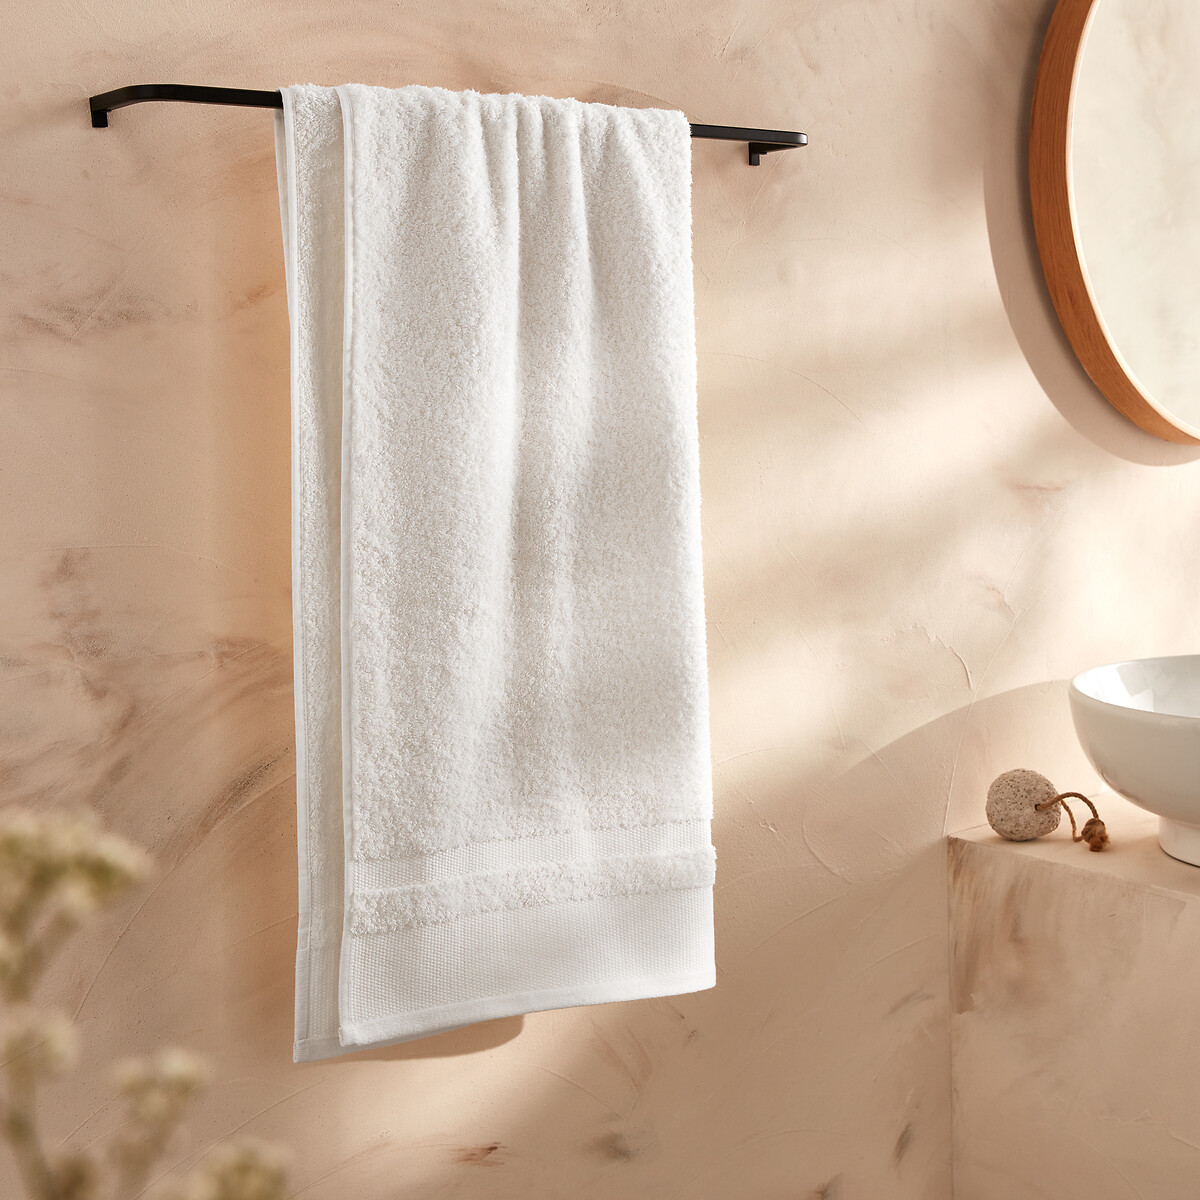 Kheops 100% cotton large bath towel La Redoute Interieurs